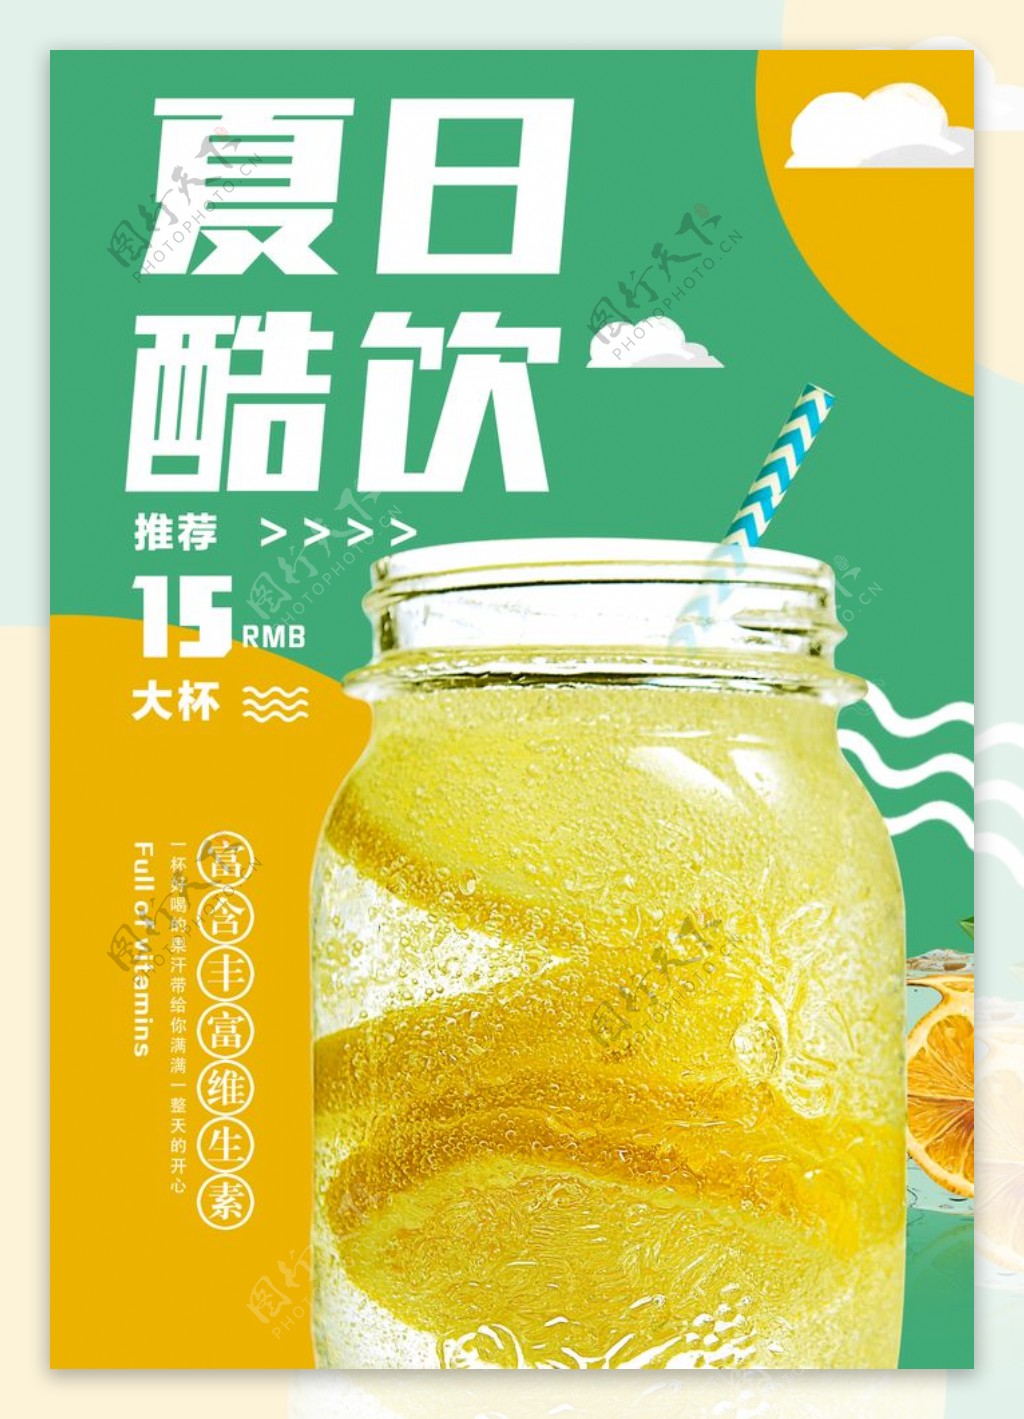 夏日酷饮柠檬红茶海报